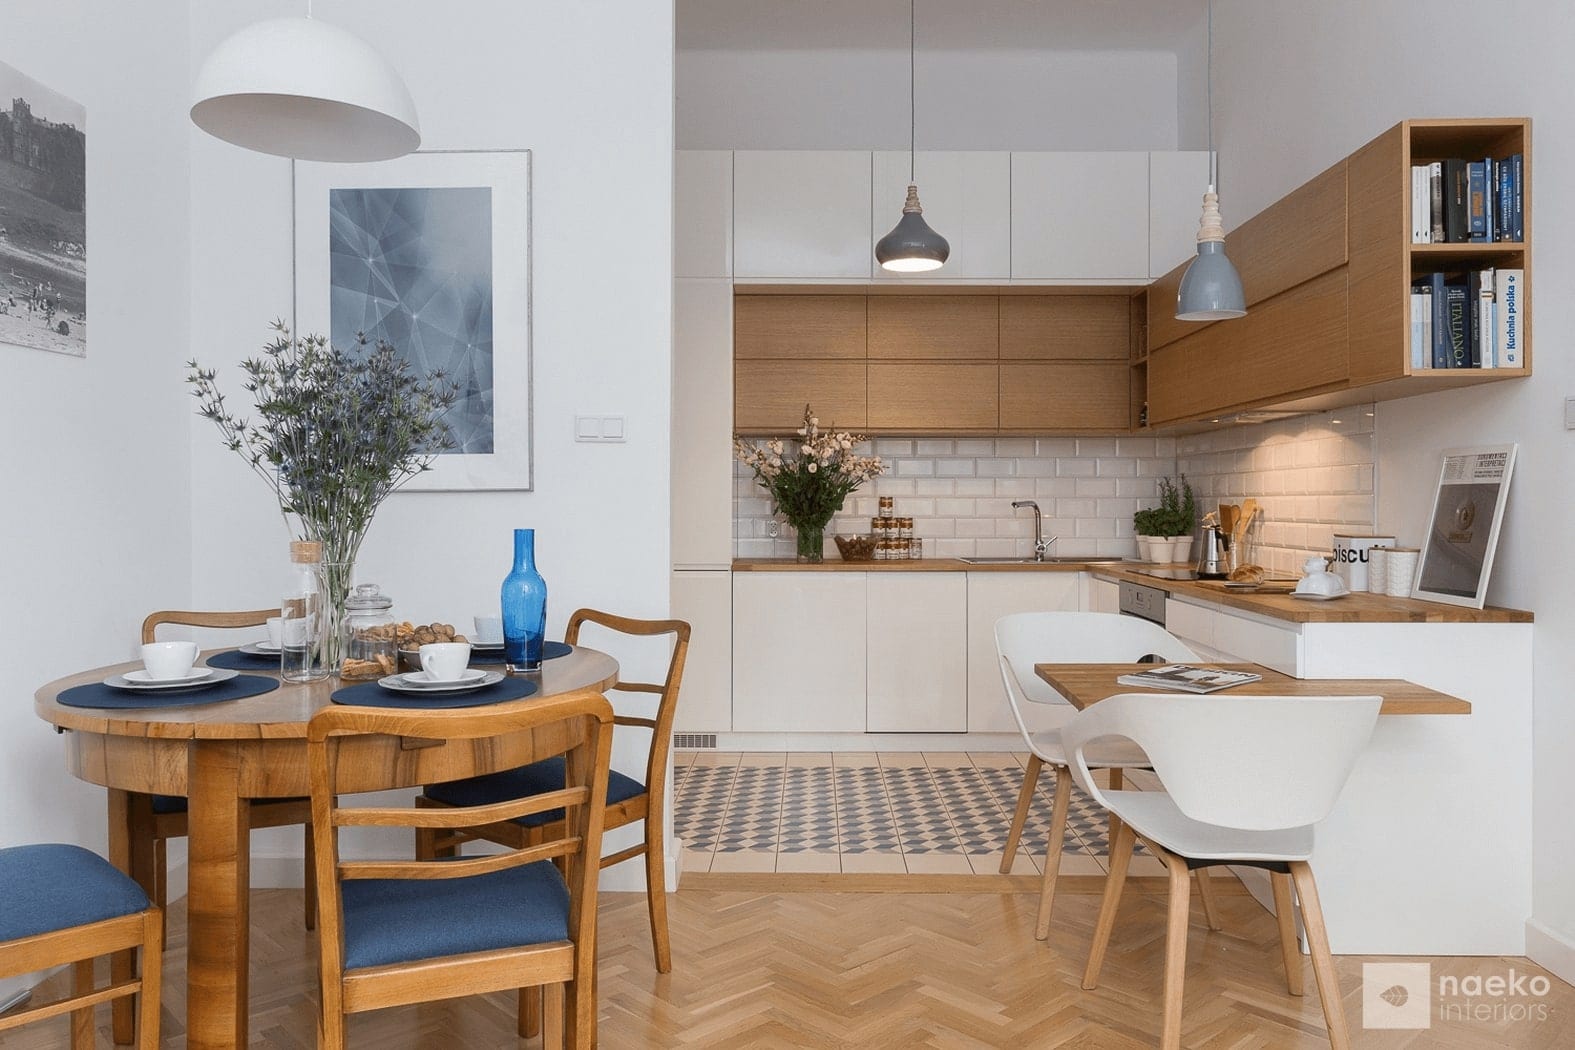 Projekt kuchni w stylu skandynawskim z białą zabudową i drewnianymi elementami oraz starym stołem i krzesłami w stylu vintage i granatowymi dodatkami